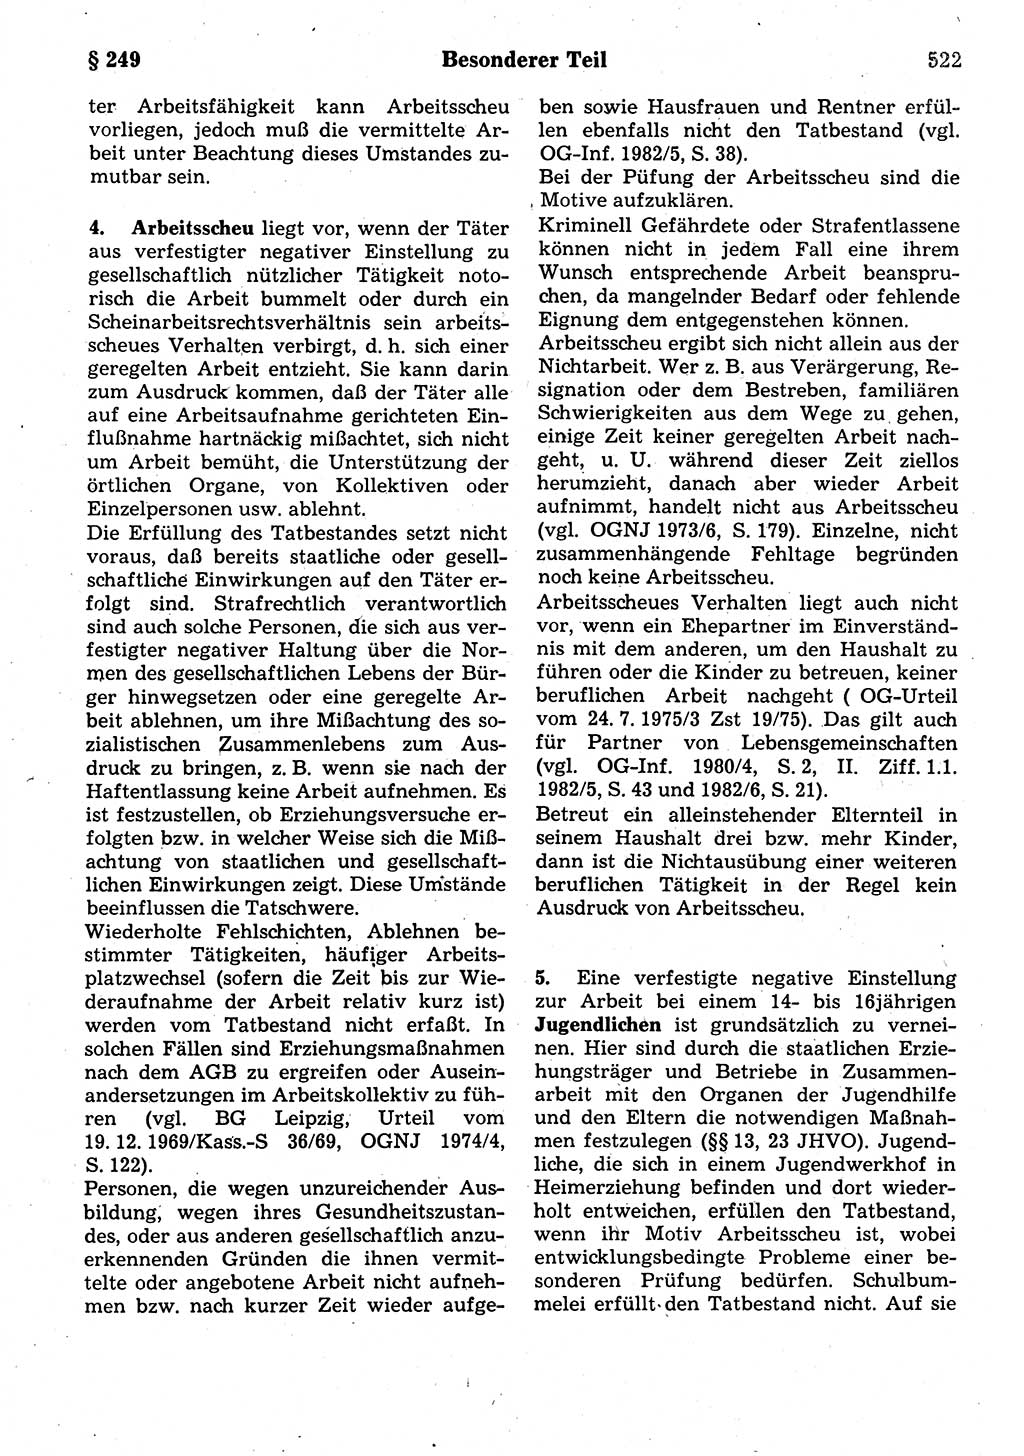 Strafrecht der Deutschen Demokratischen Republik (DDR), Kommentar zum Strafgesetzbuch (StGB) 1987, Seite 522 (Strafr. DDR Komm. StGB 1987, S. 522)